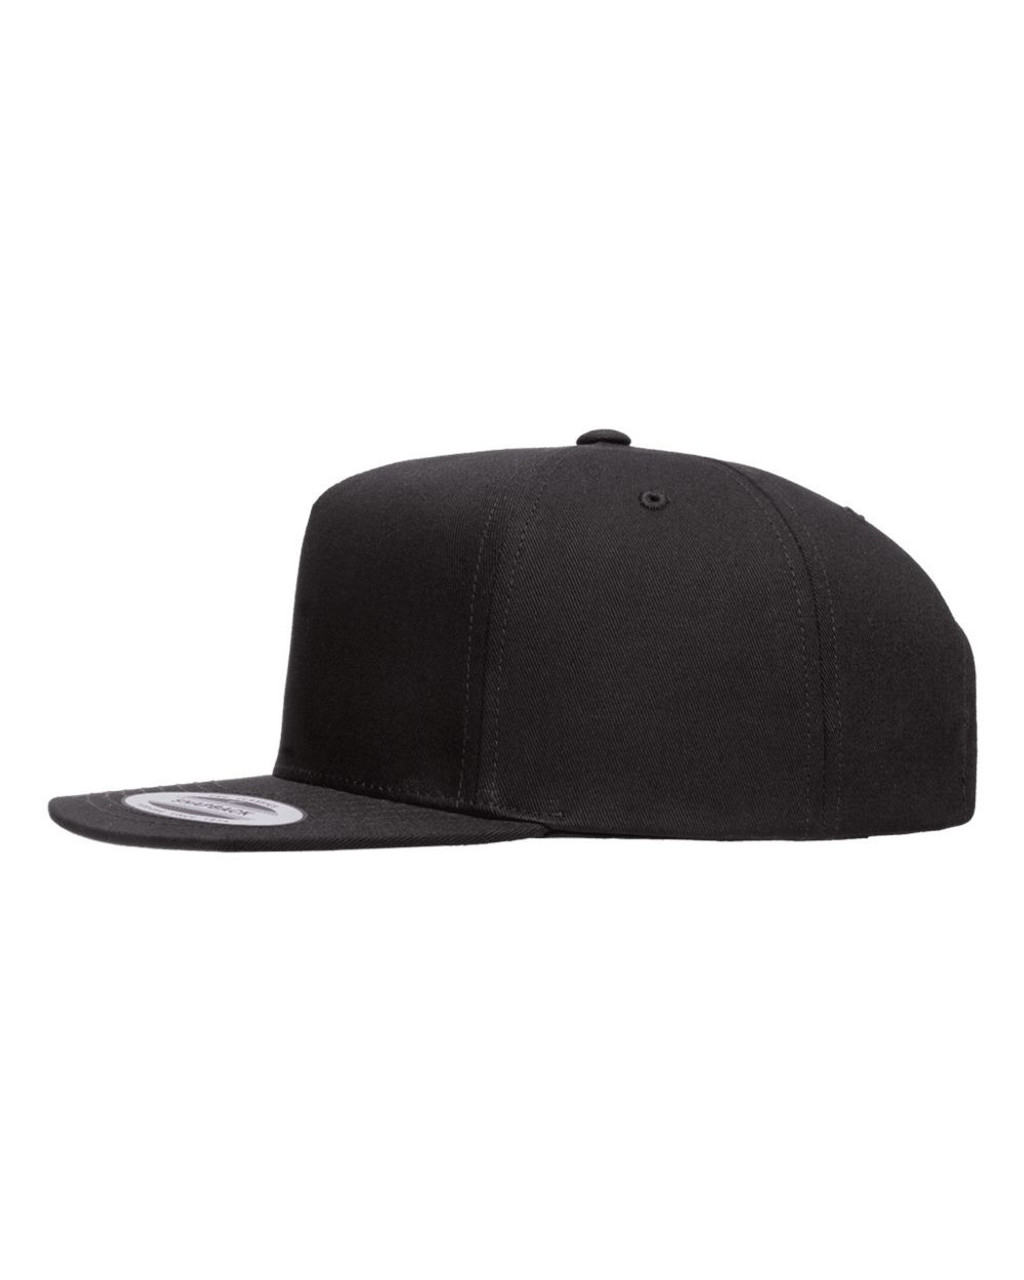 Dimebag Original Heat Pressed Razor Darrell Flat Bill Hat - Adult Black Twill Snap Back Adjustable Cap